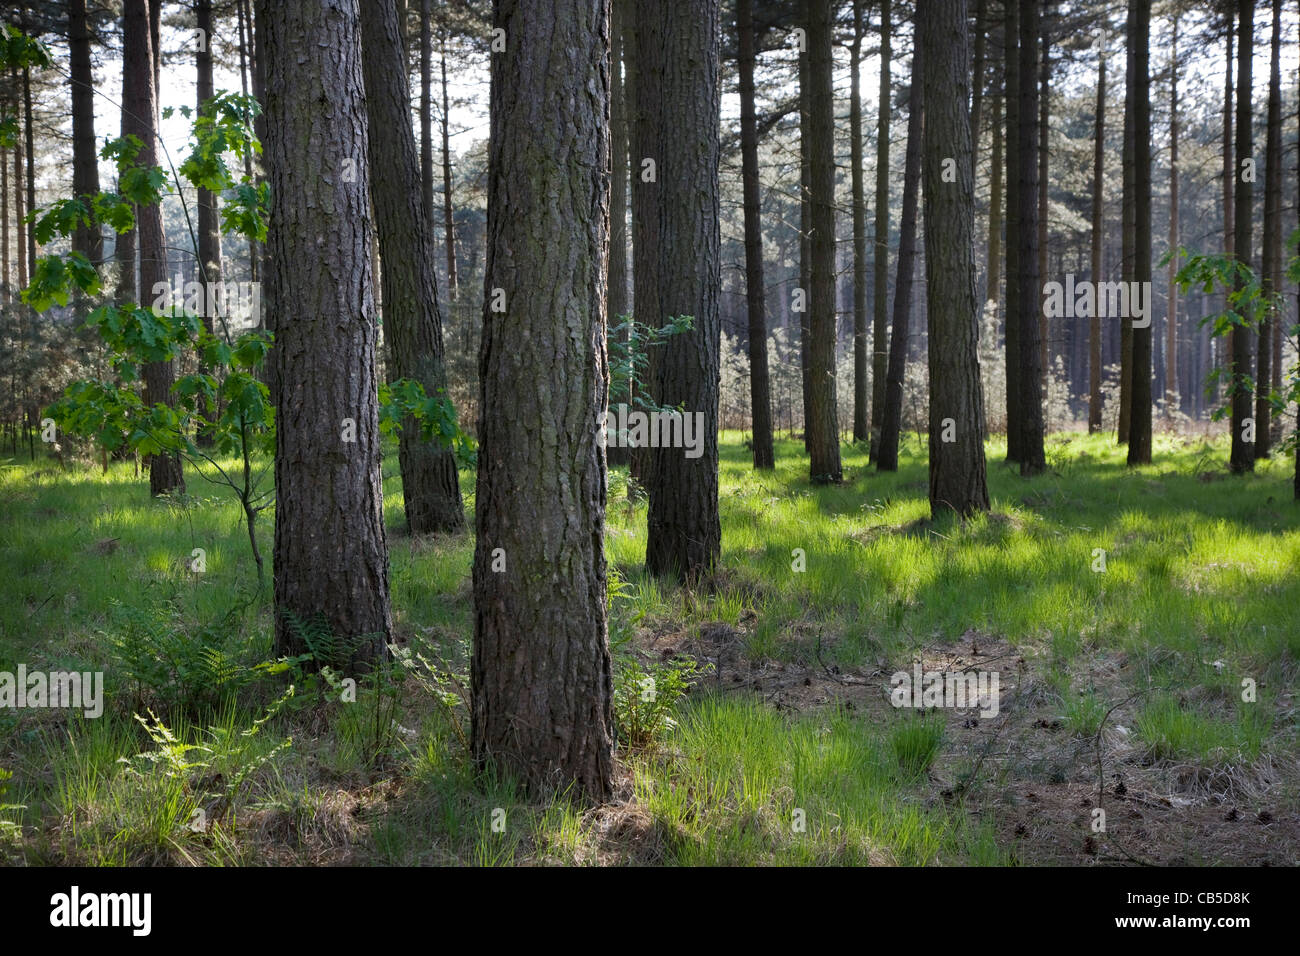 Unión pino negro (Pinus nigra) los árboles en el bosque, Bélgica Foto de stock